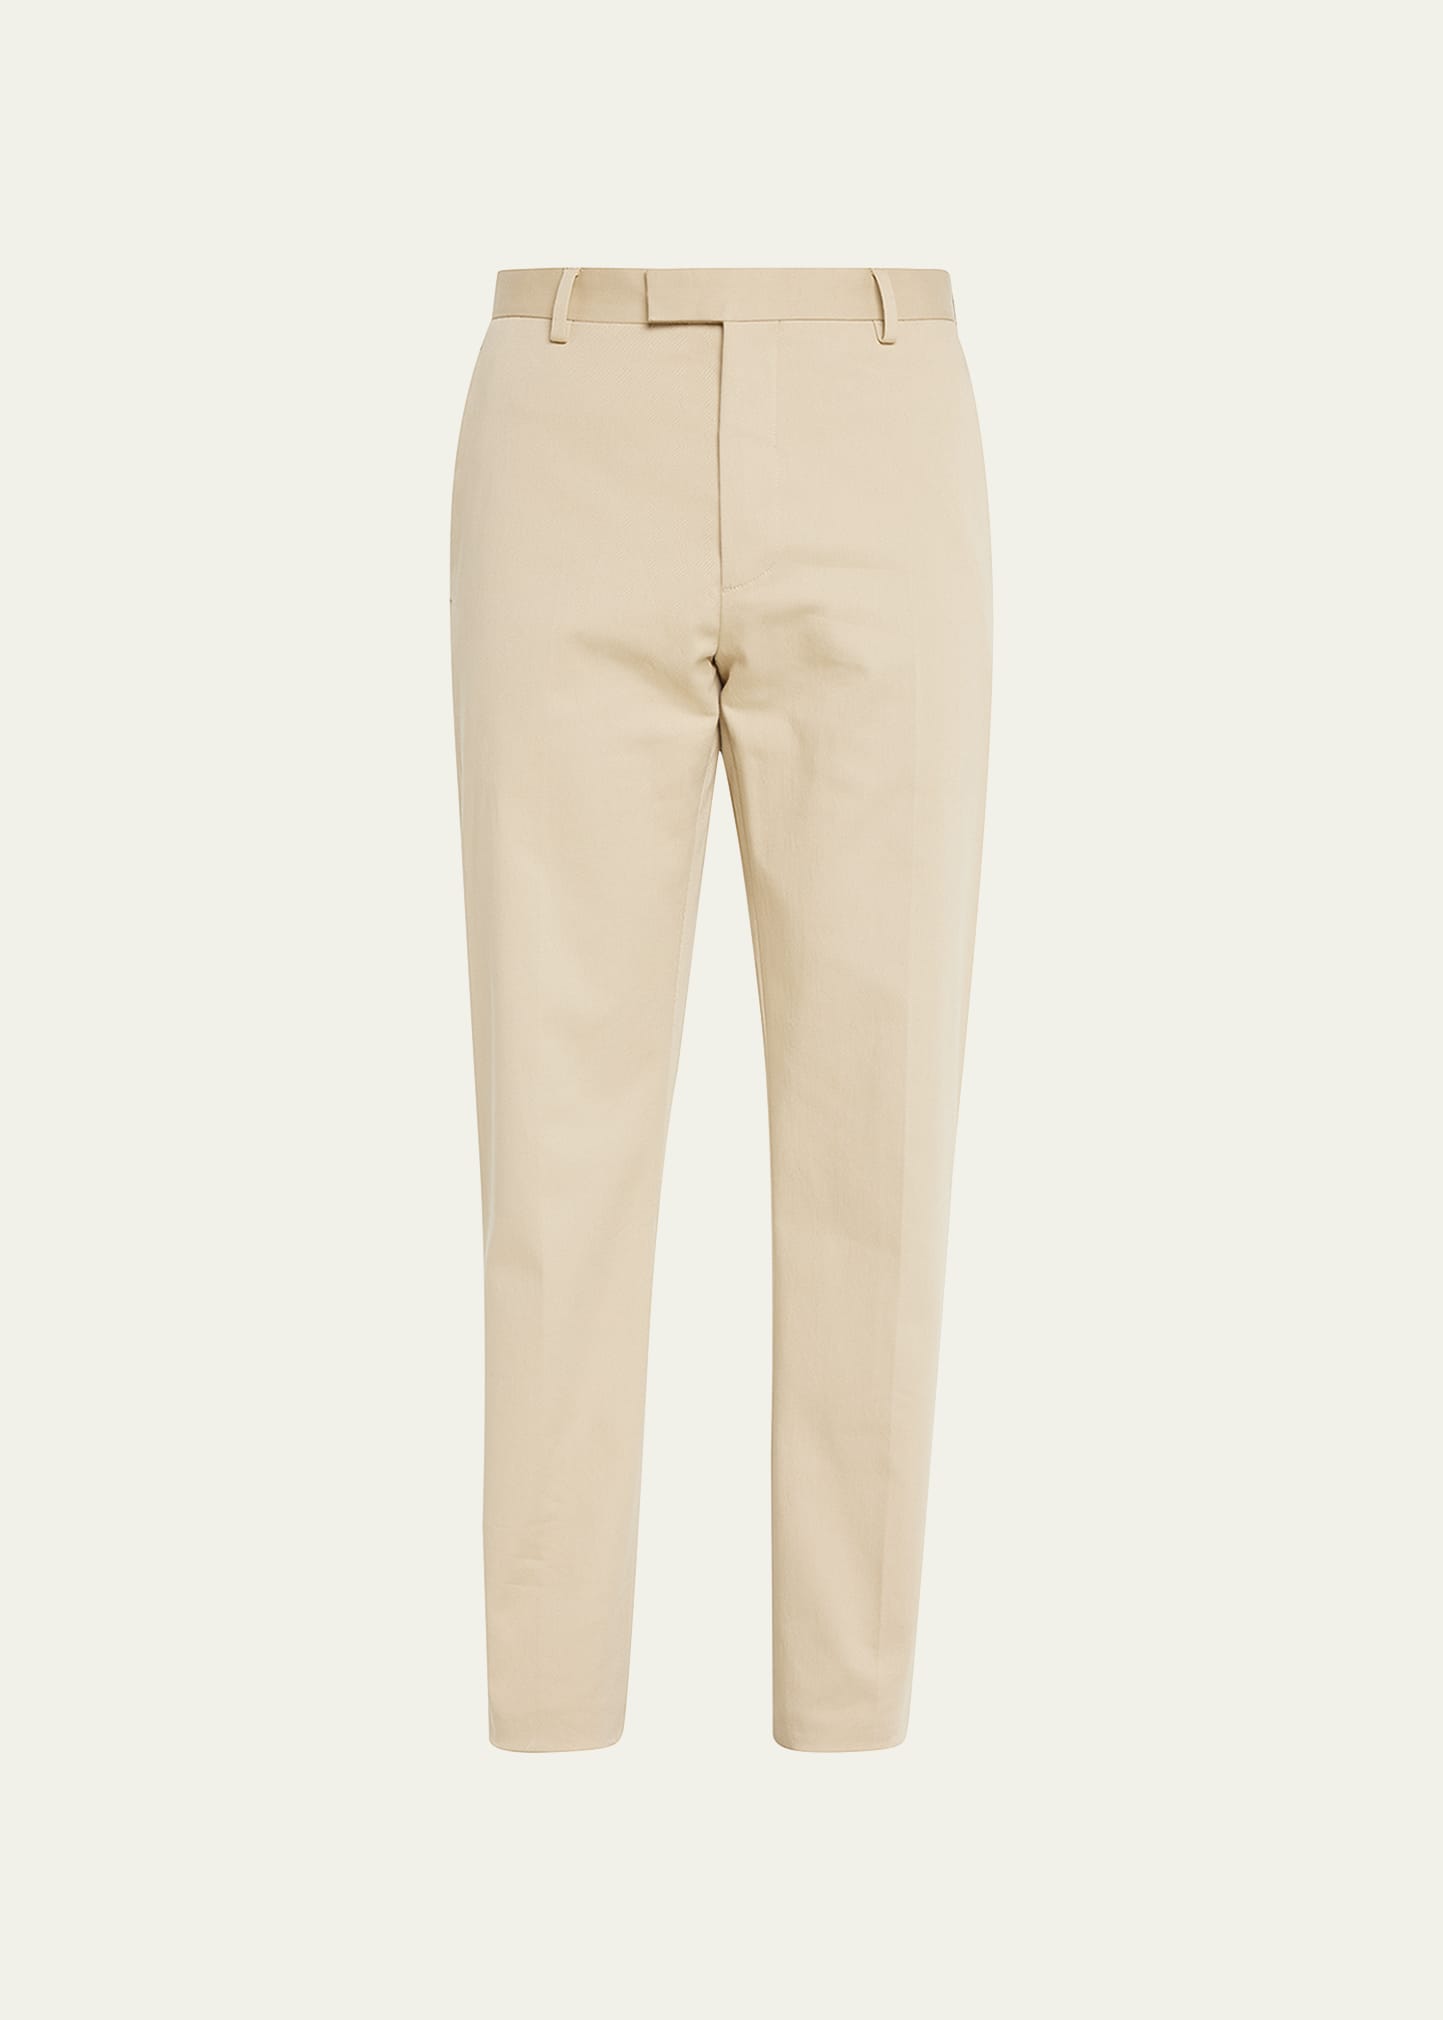 Berluti Men's Cotton-Stretch Chino Trousers